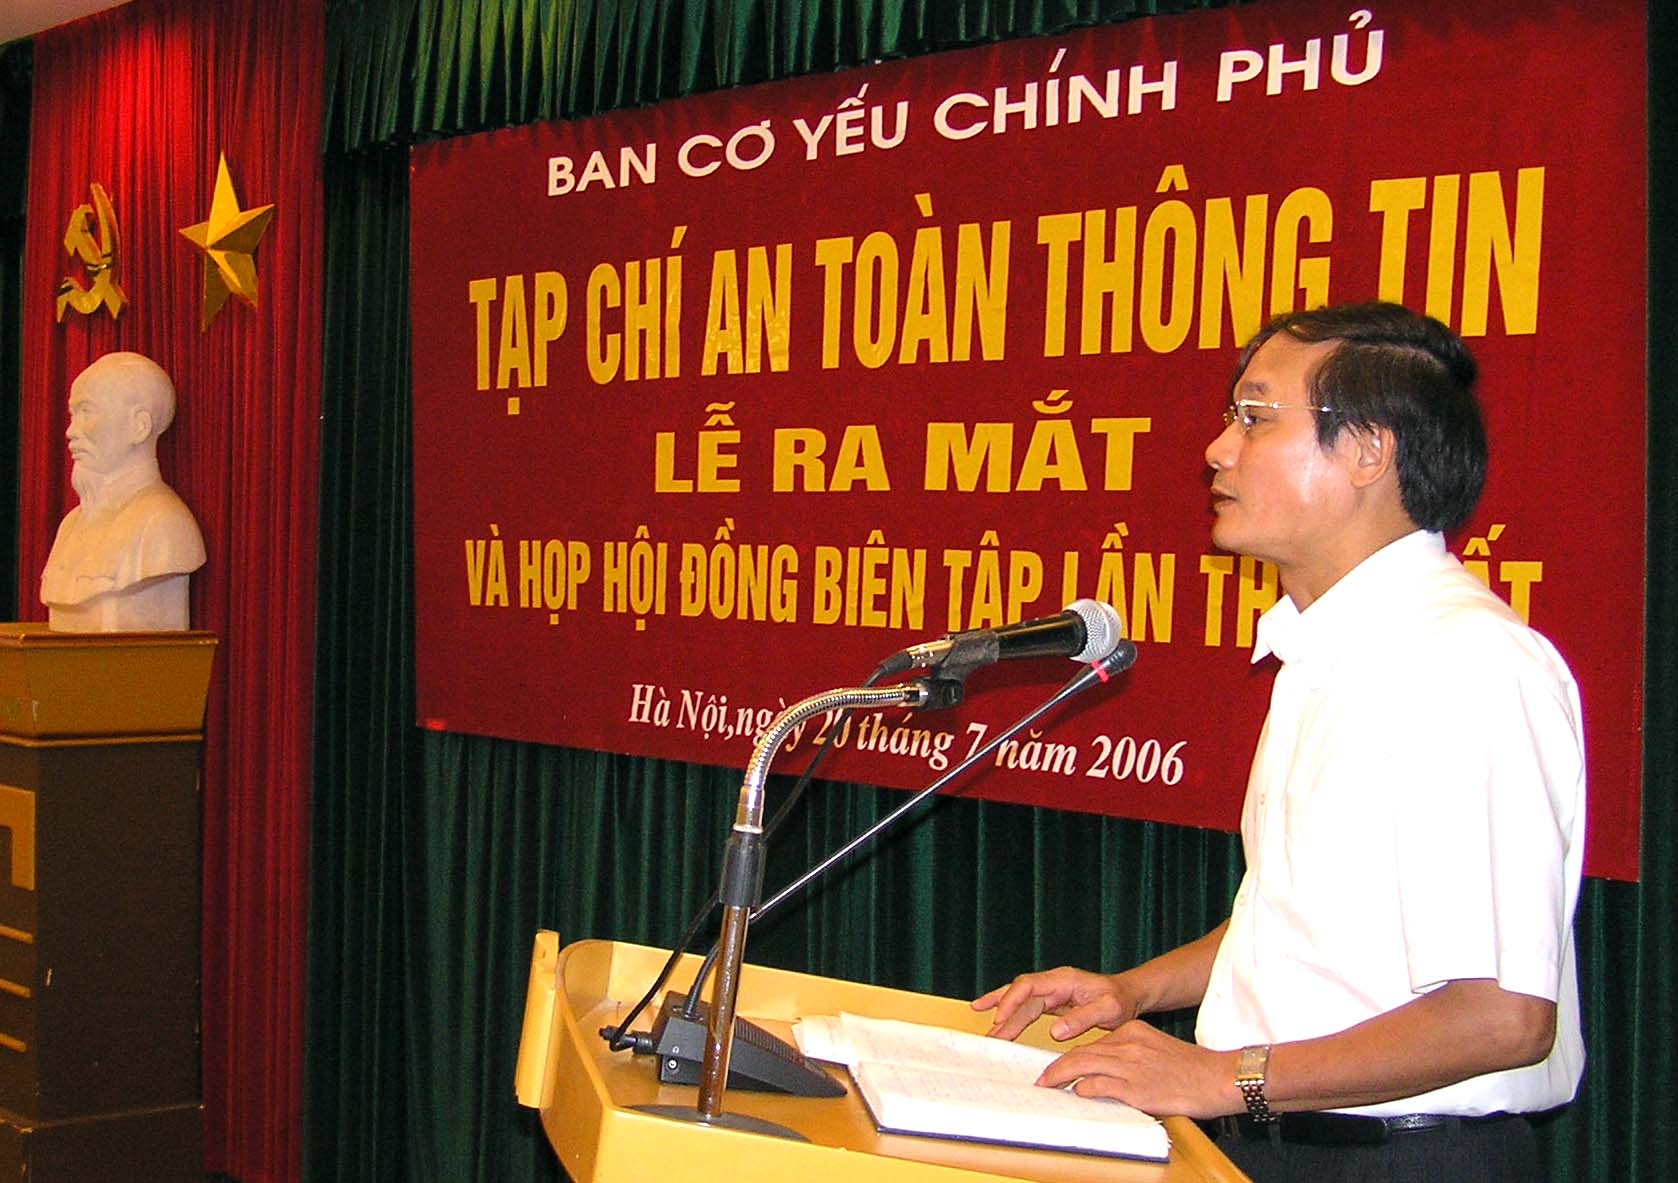 TS. Trần Nguyên Bình - Phó trưởng ban Ban Cơ yếu Chính phủ, Tổng biên tập Tạp chí An toàn thông tin phát biểu tại buổi Lế